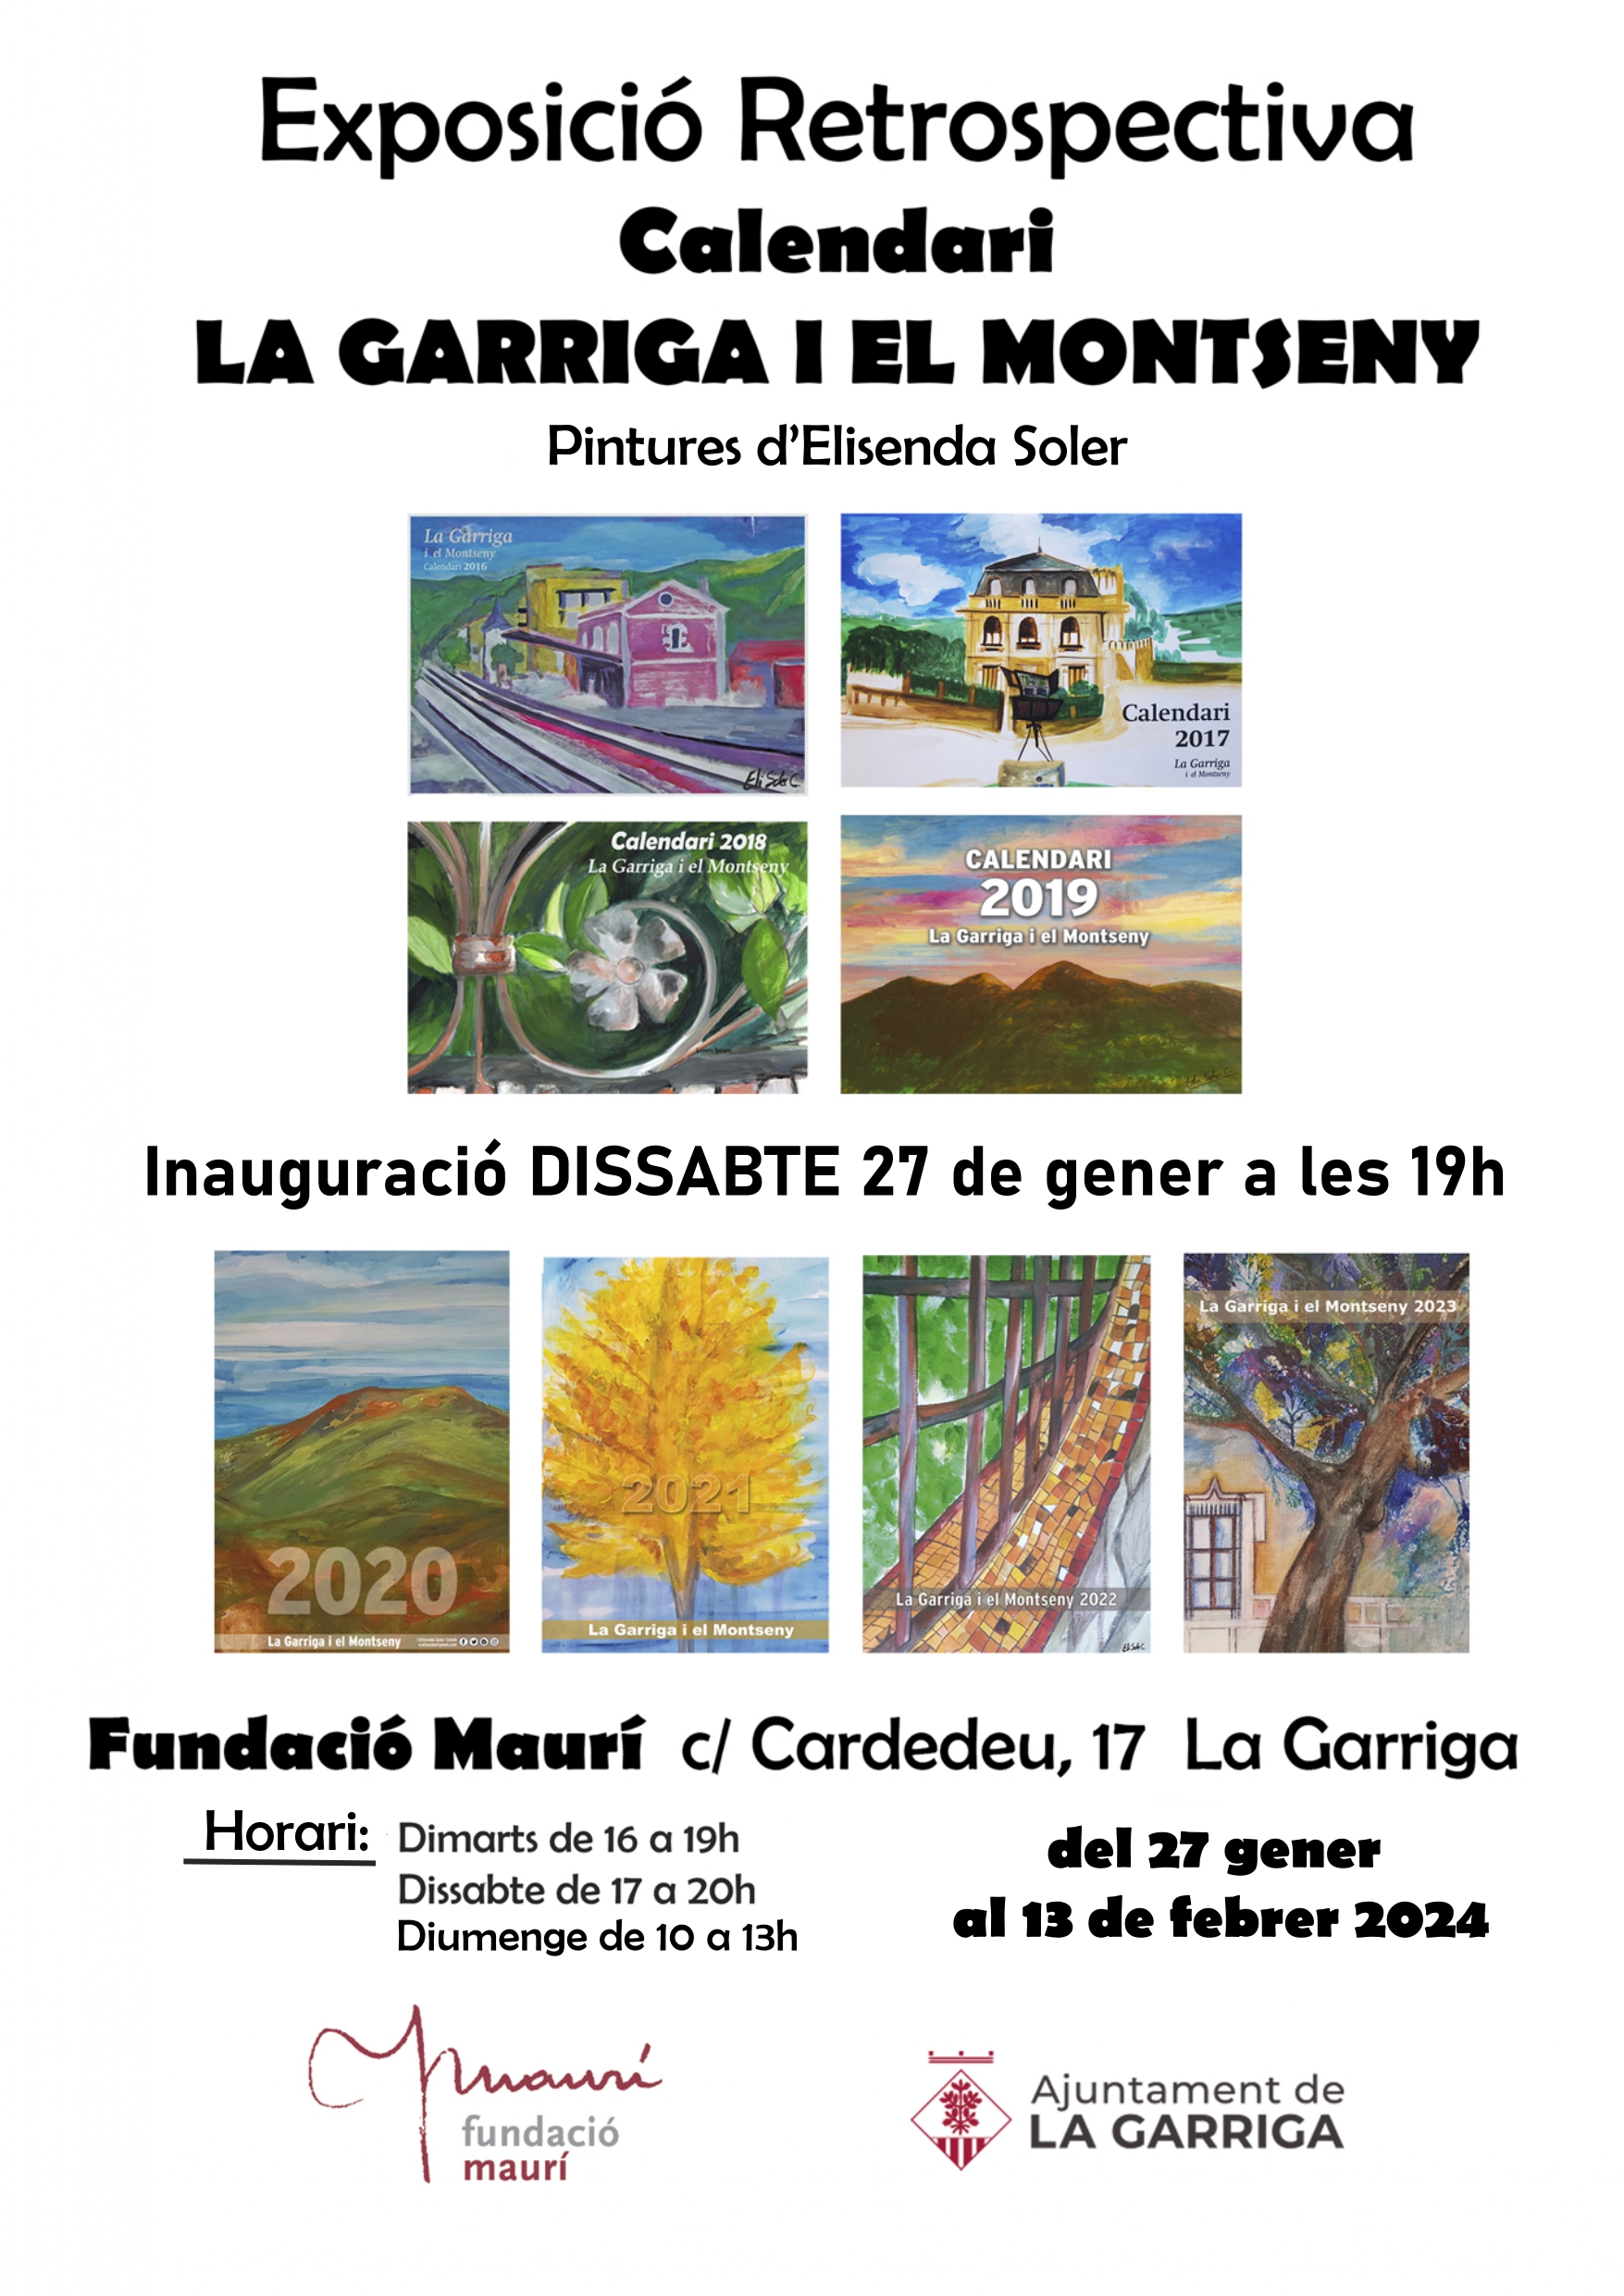 Retrospectiva del calendari de la Garriga i el Montseny